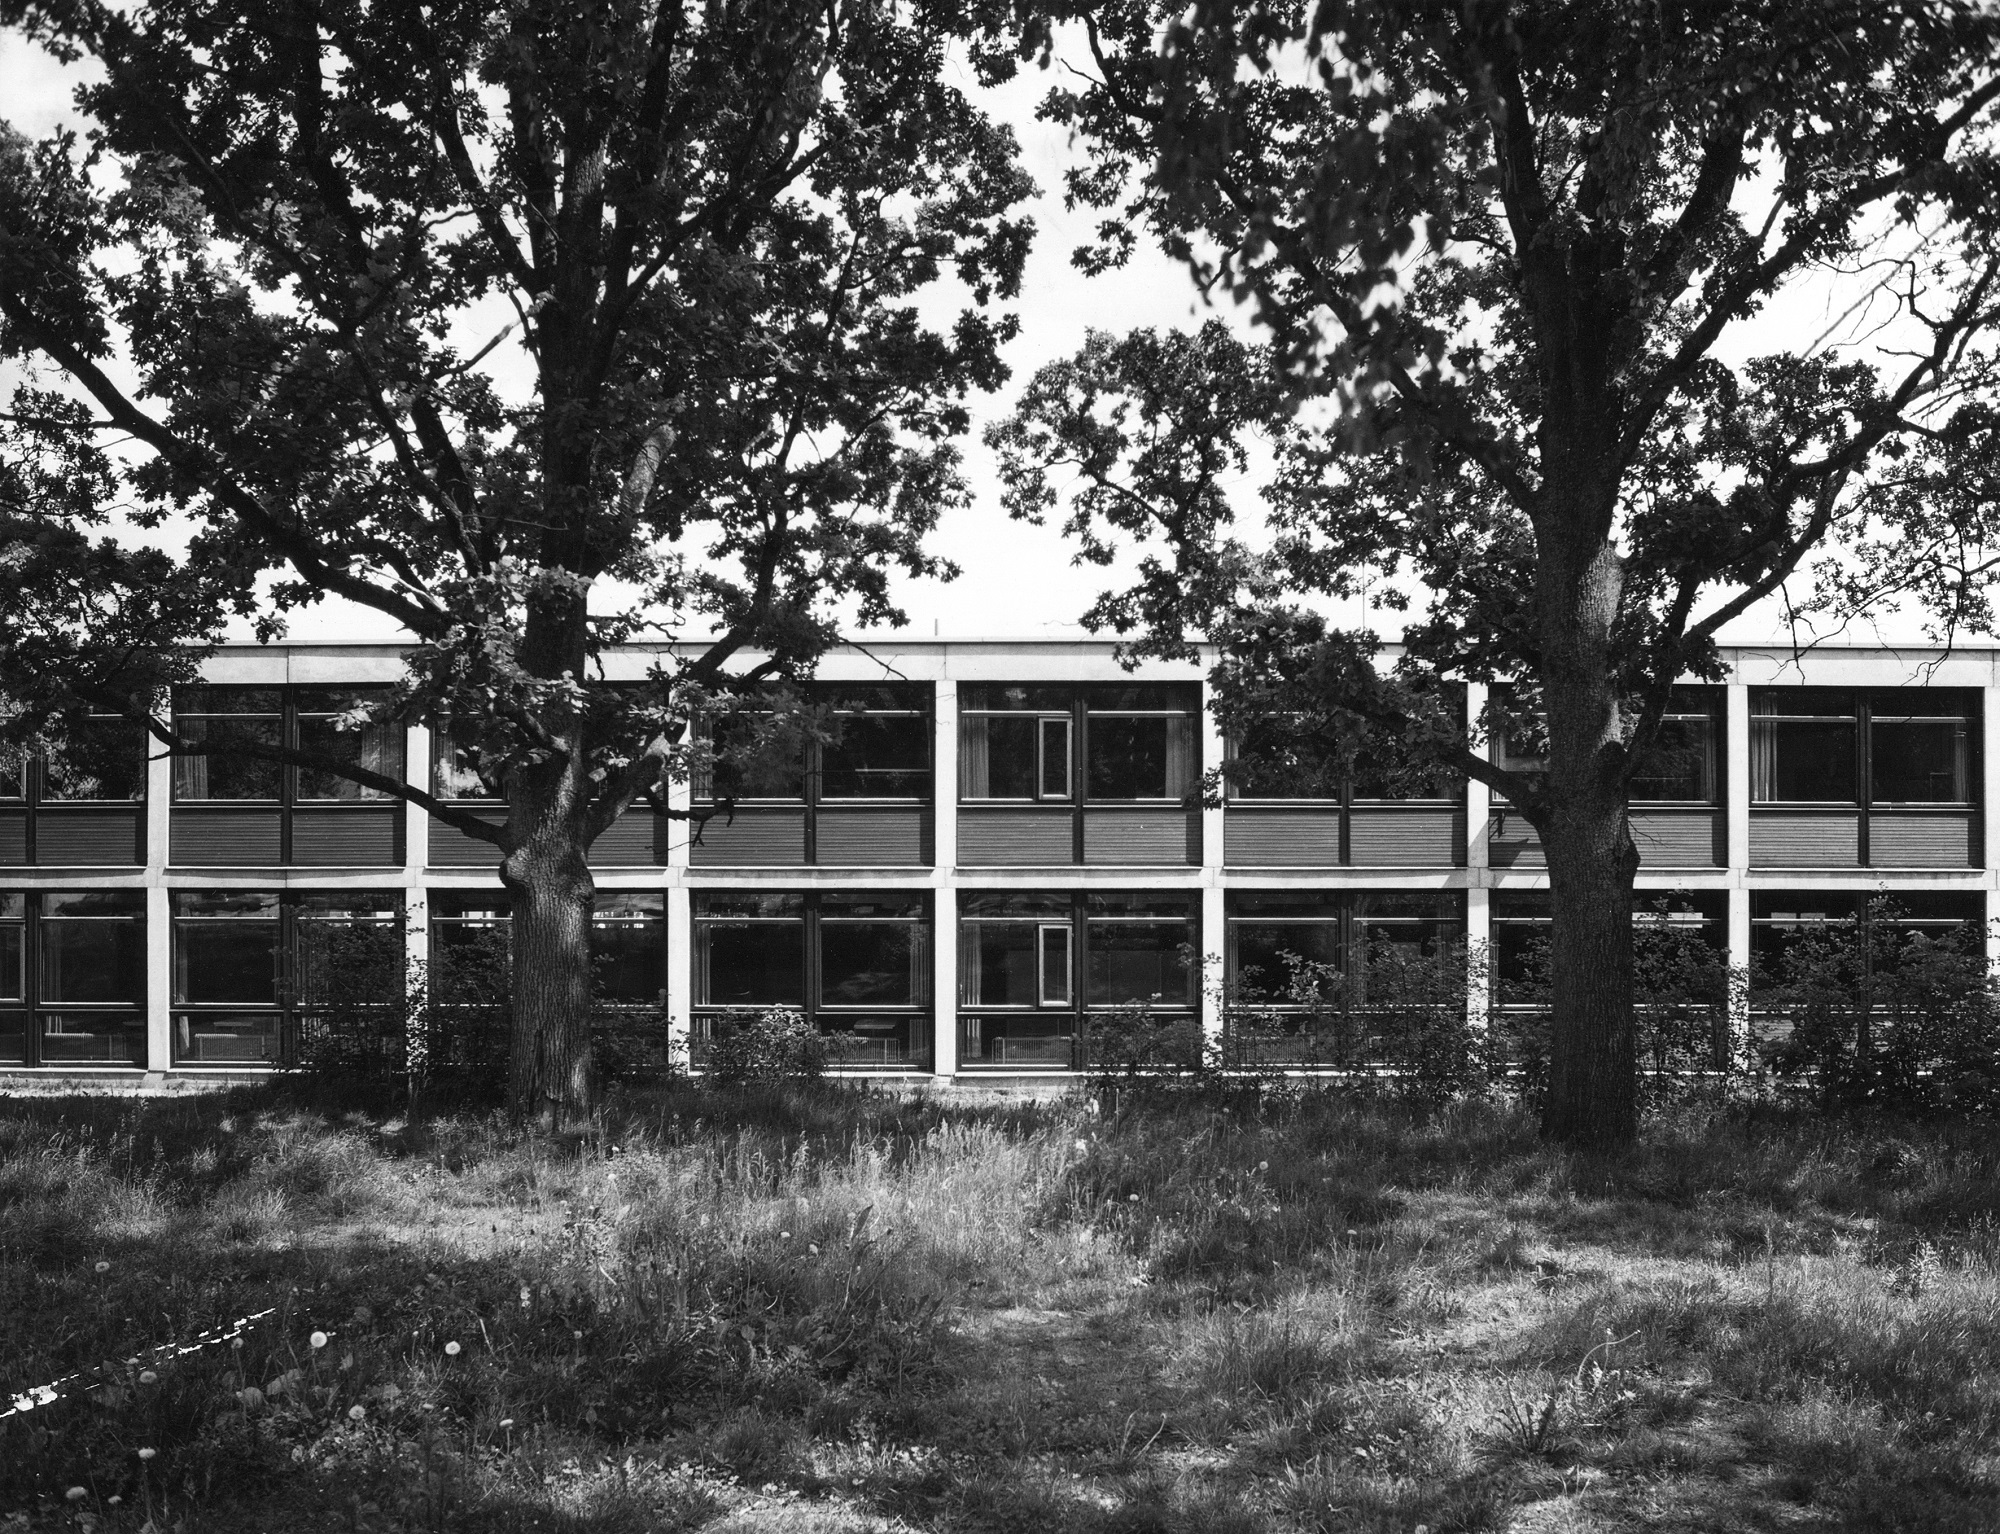 Vapaaniemen yhteiskoulu, Espoo 1970. Julkisivussa näkyy pilari-palkki -runko.